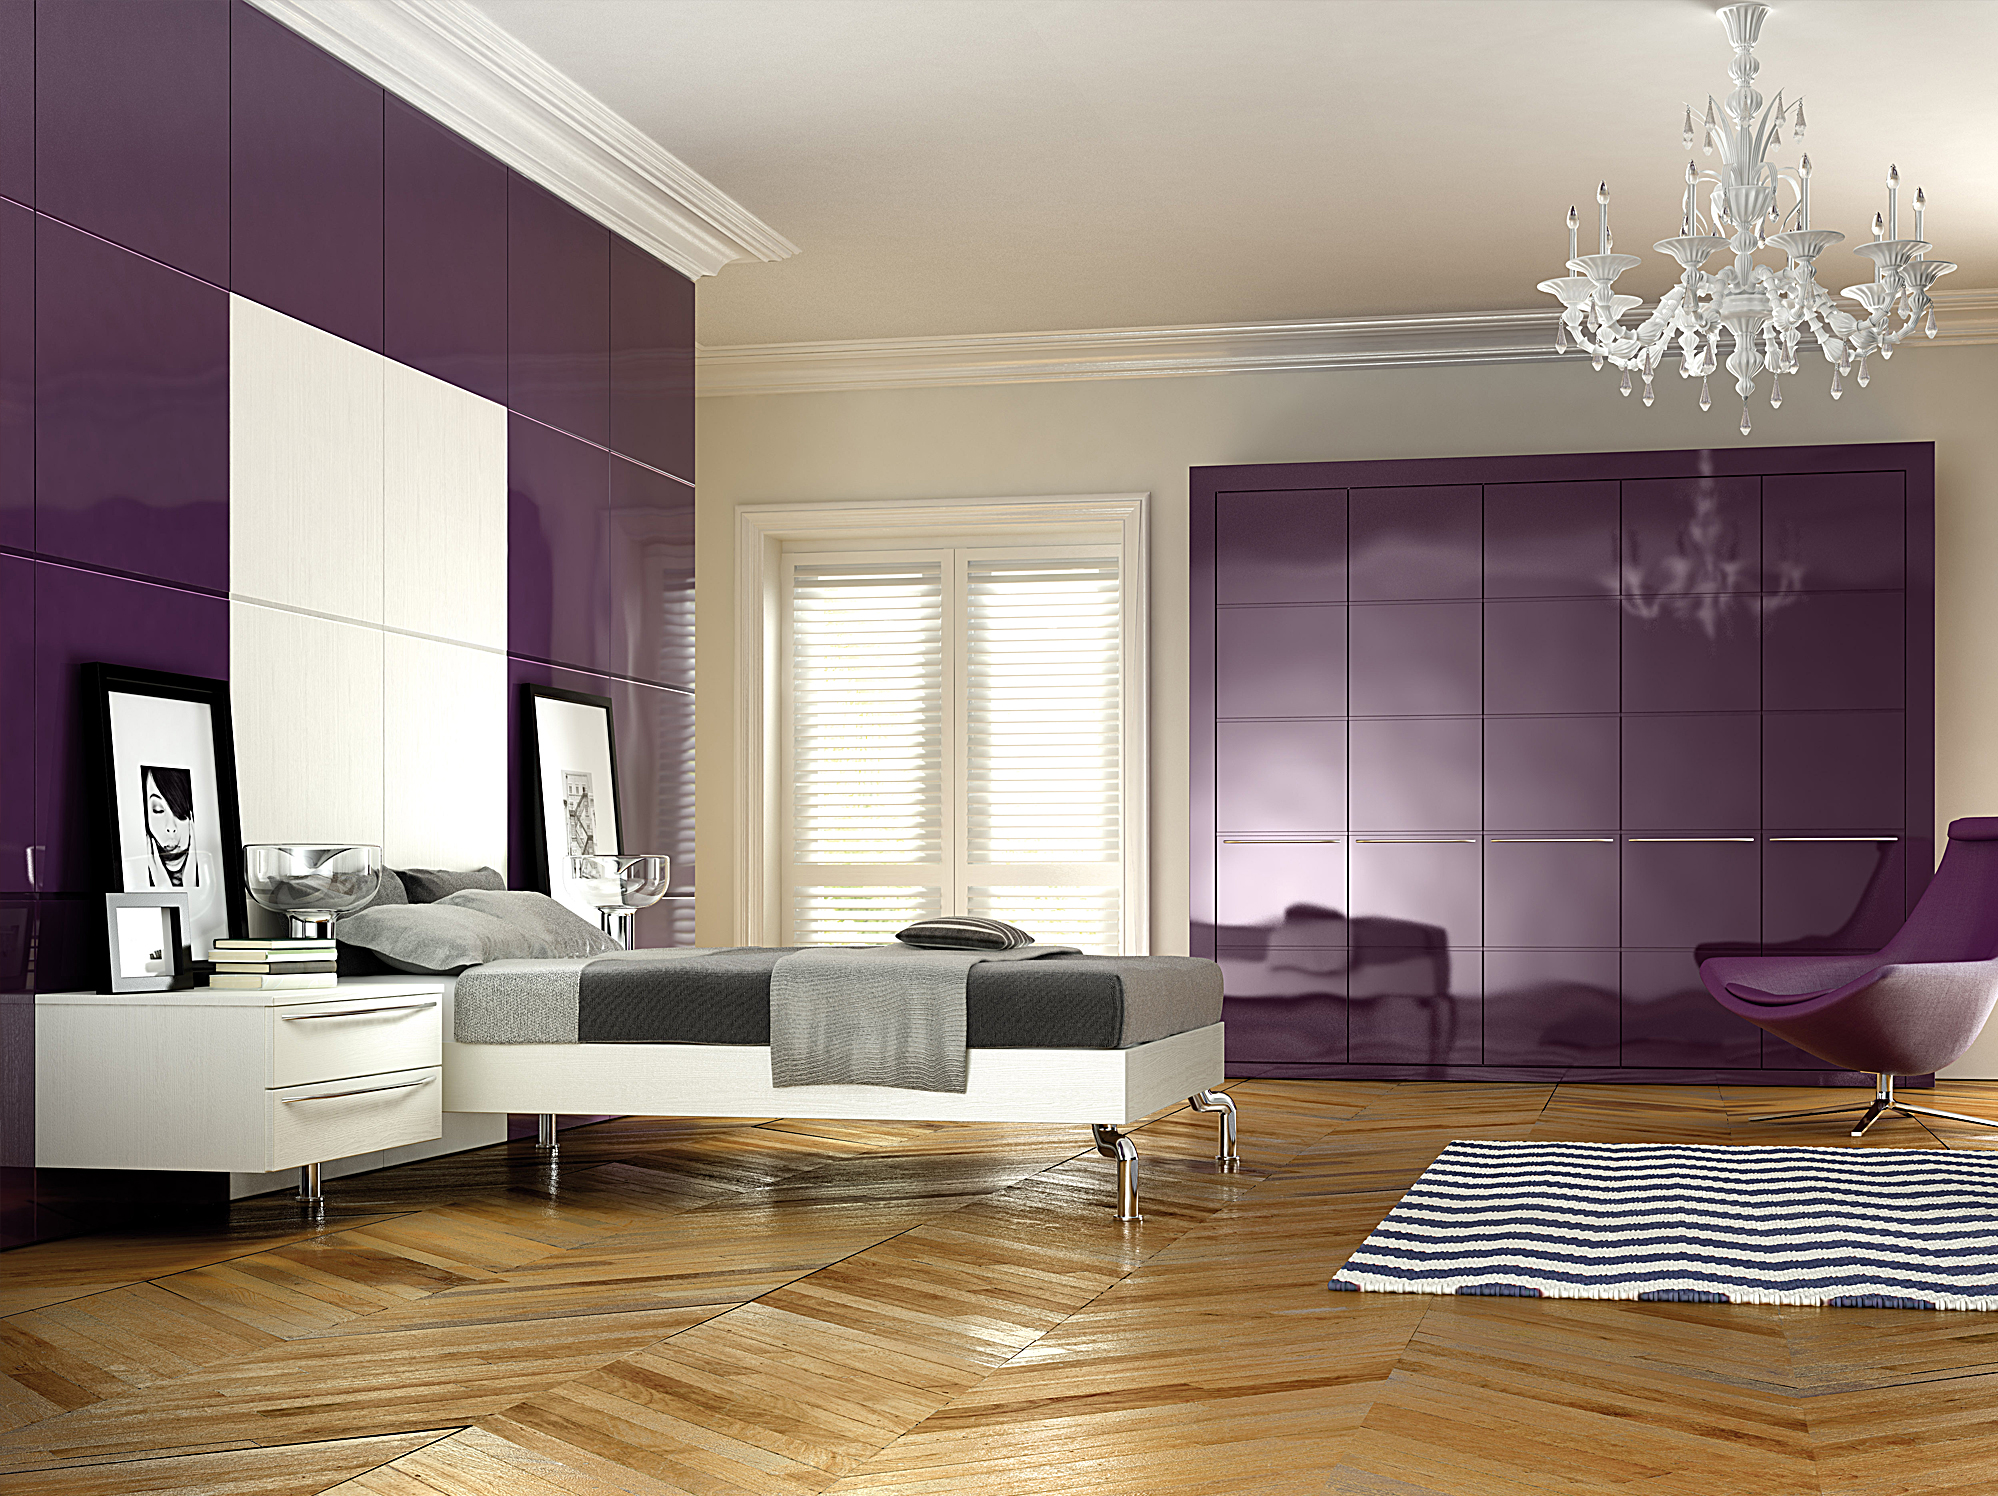 Фиолетовые стены и мебель в спальне как акценты